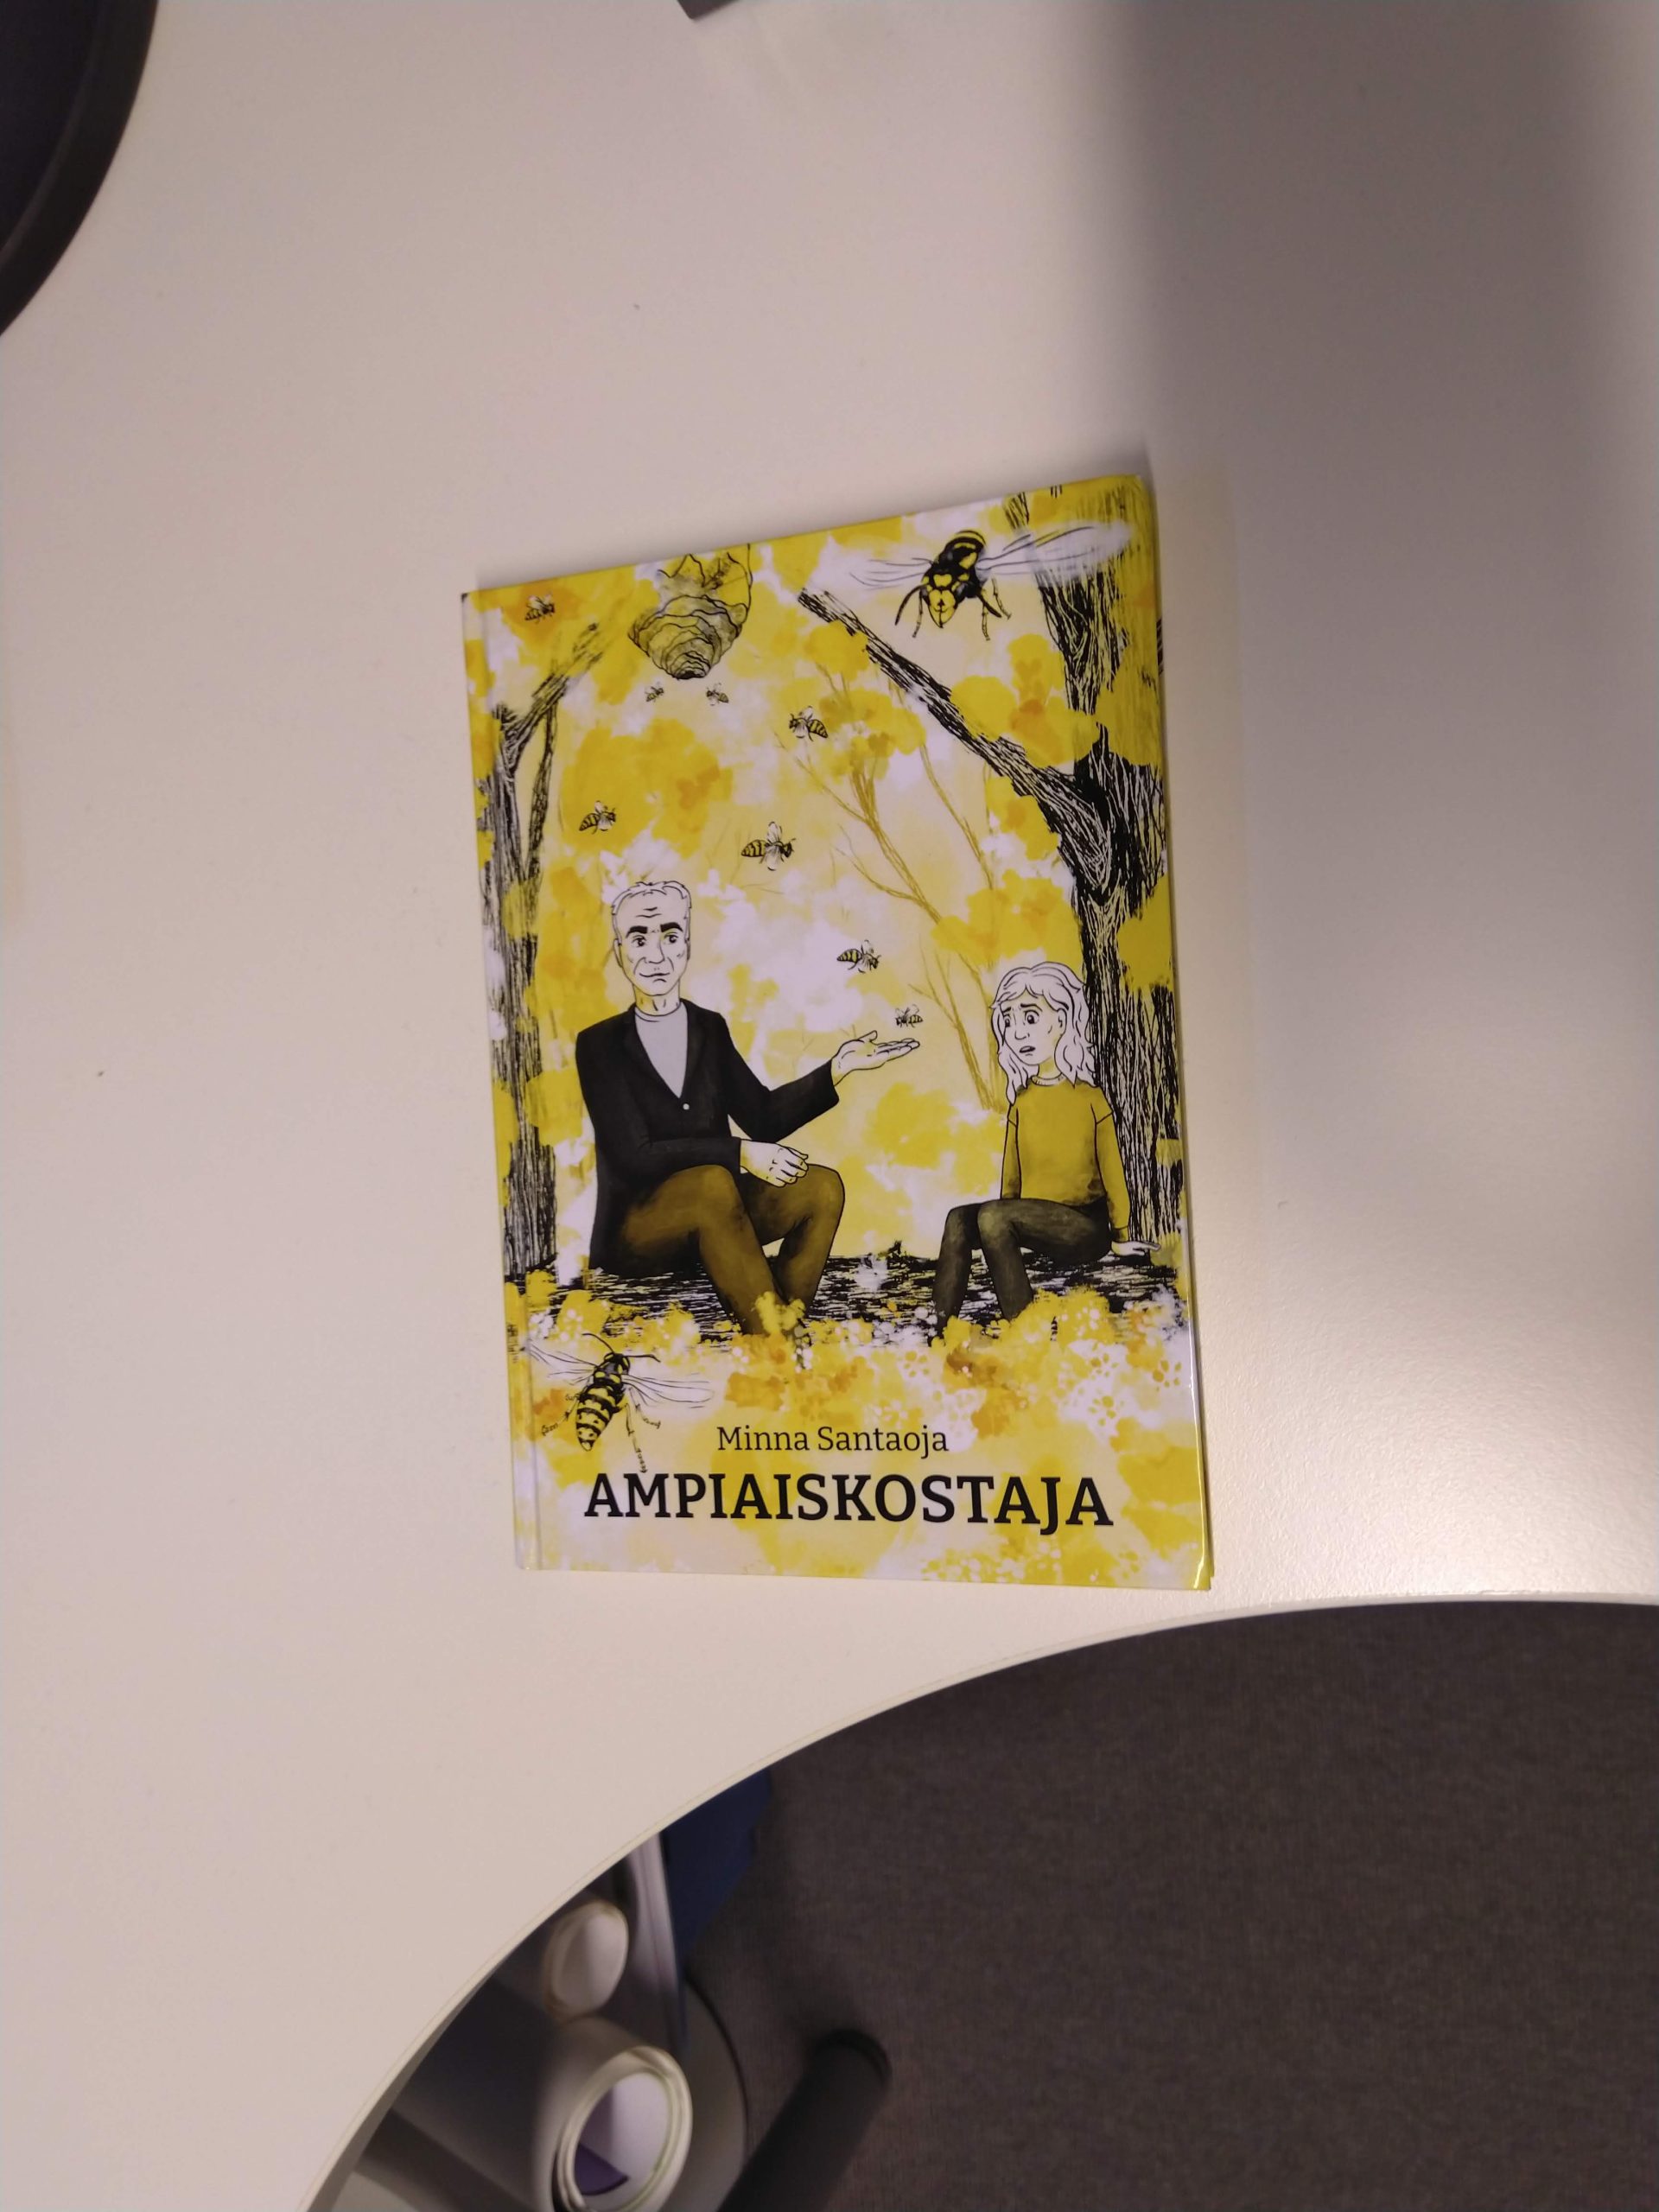 Kirjassa on keltainen kansi, jossa piirretty mies ja tyttö istuvat puun rungon alla. Heidän ympärillään lentää ampiaisia. Tyttö näyttää huolestuneelta, mies rennolta, ja on selittämässä jotain tytölle. Kannessa lukee Minna Santaoja - Ampiaiskostaja.